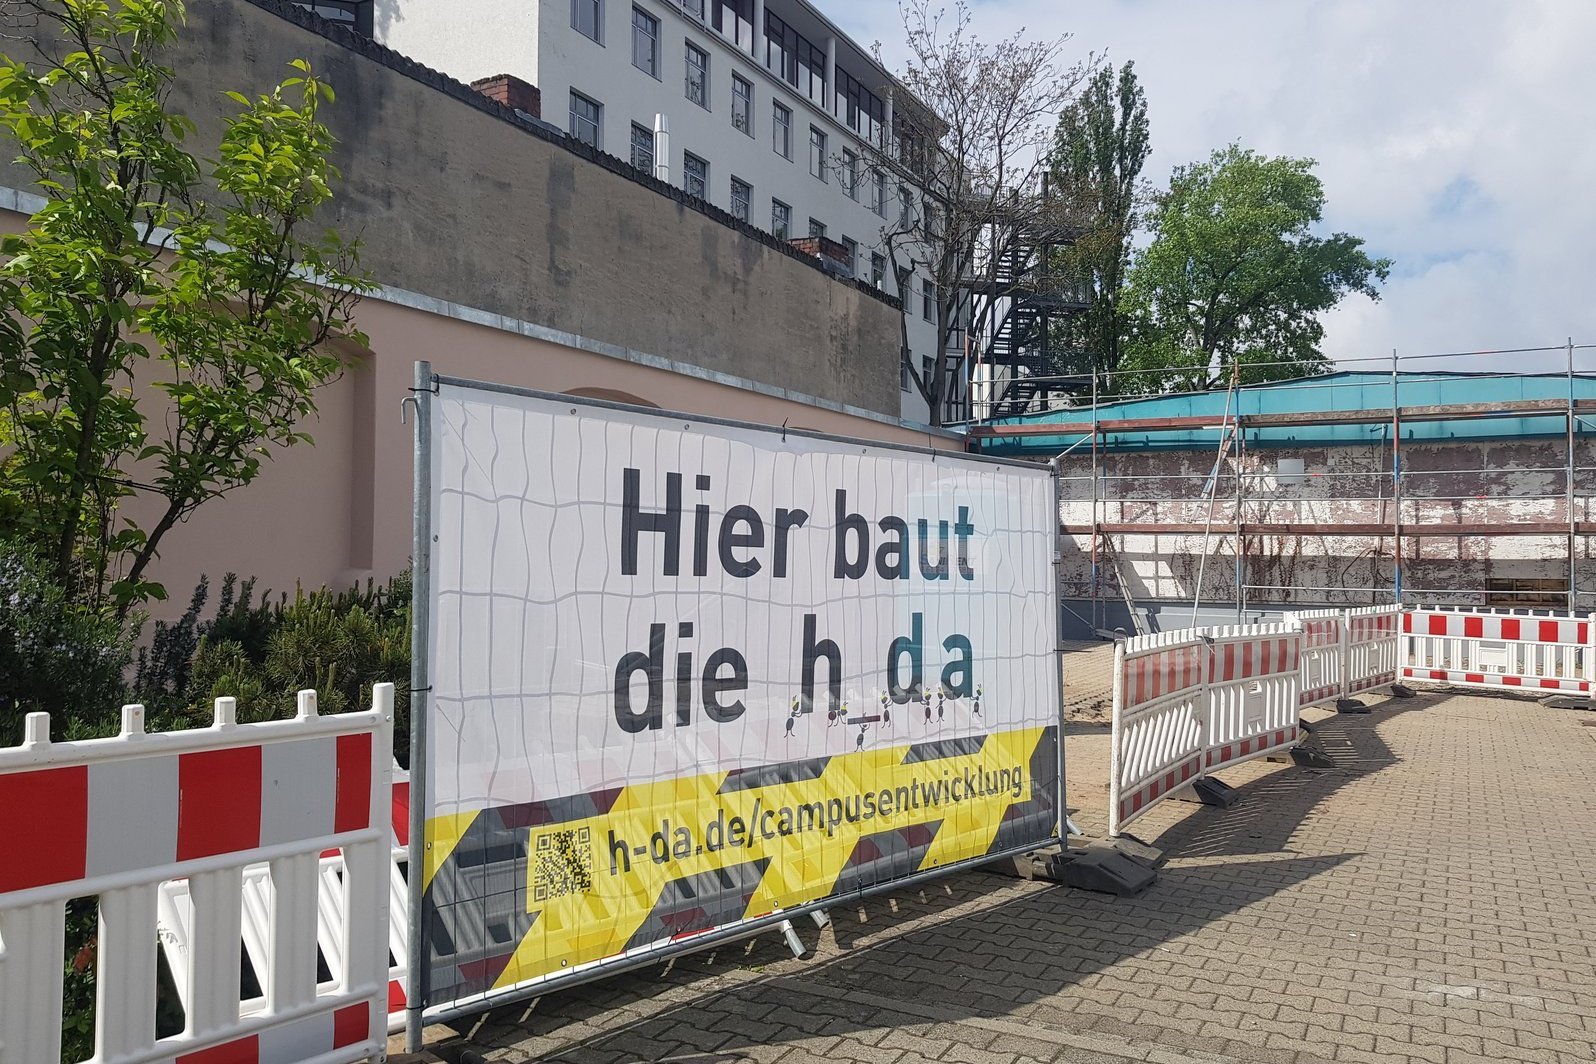 Blick auf das Banner am Bauzaun mit schwarz-gelber Grafik "Hier baut die h_da"